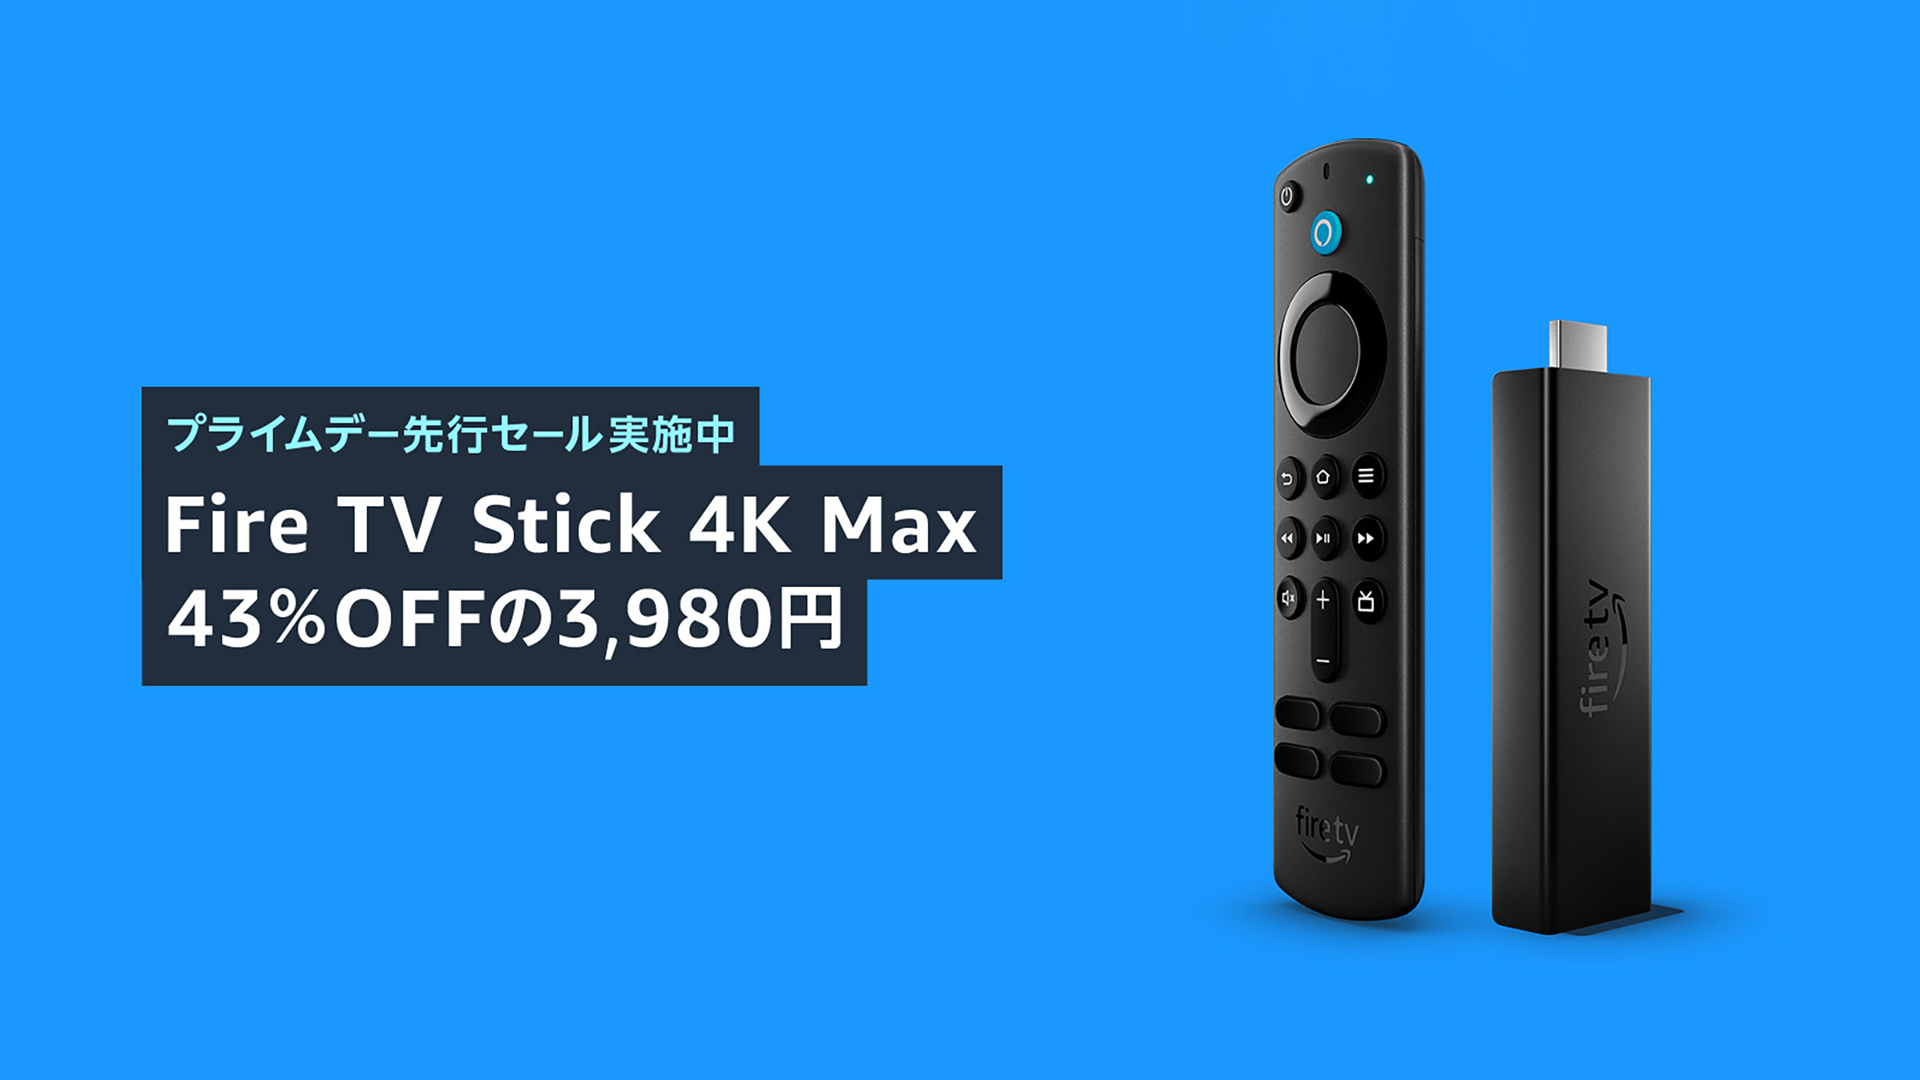 Amazonプライムデー先行セールで「Fire TV Stick 4K Max」が43%オフの3,980円で販売中